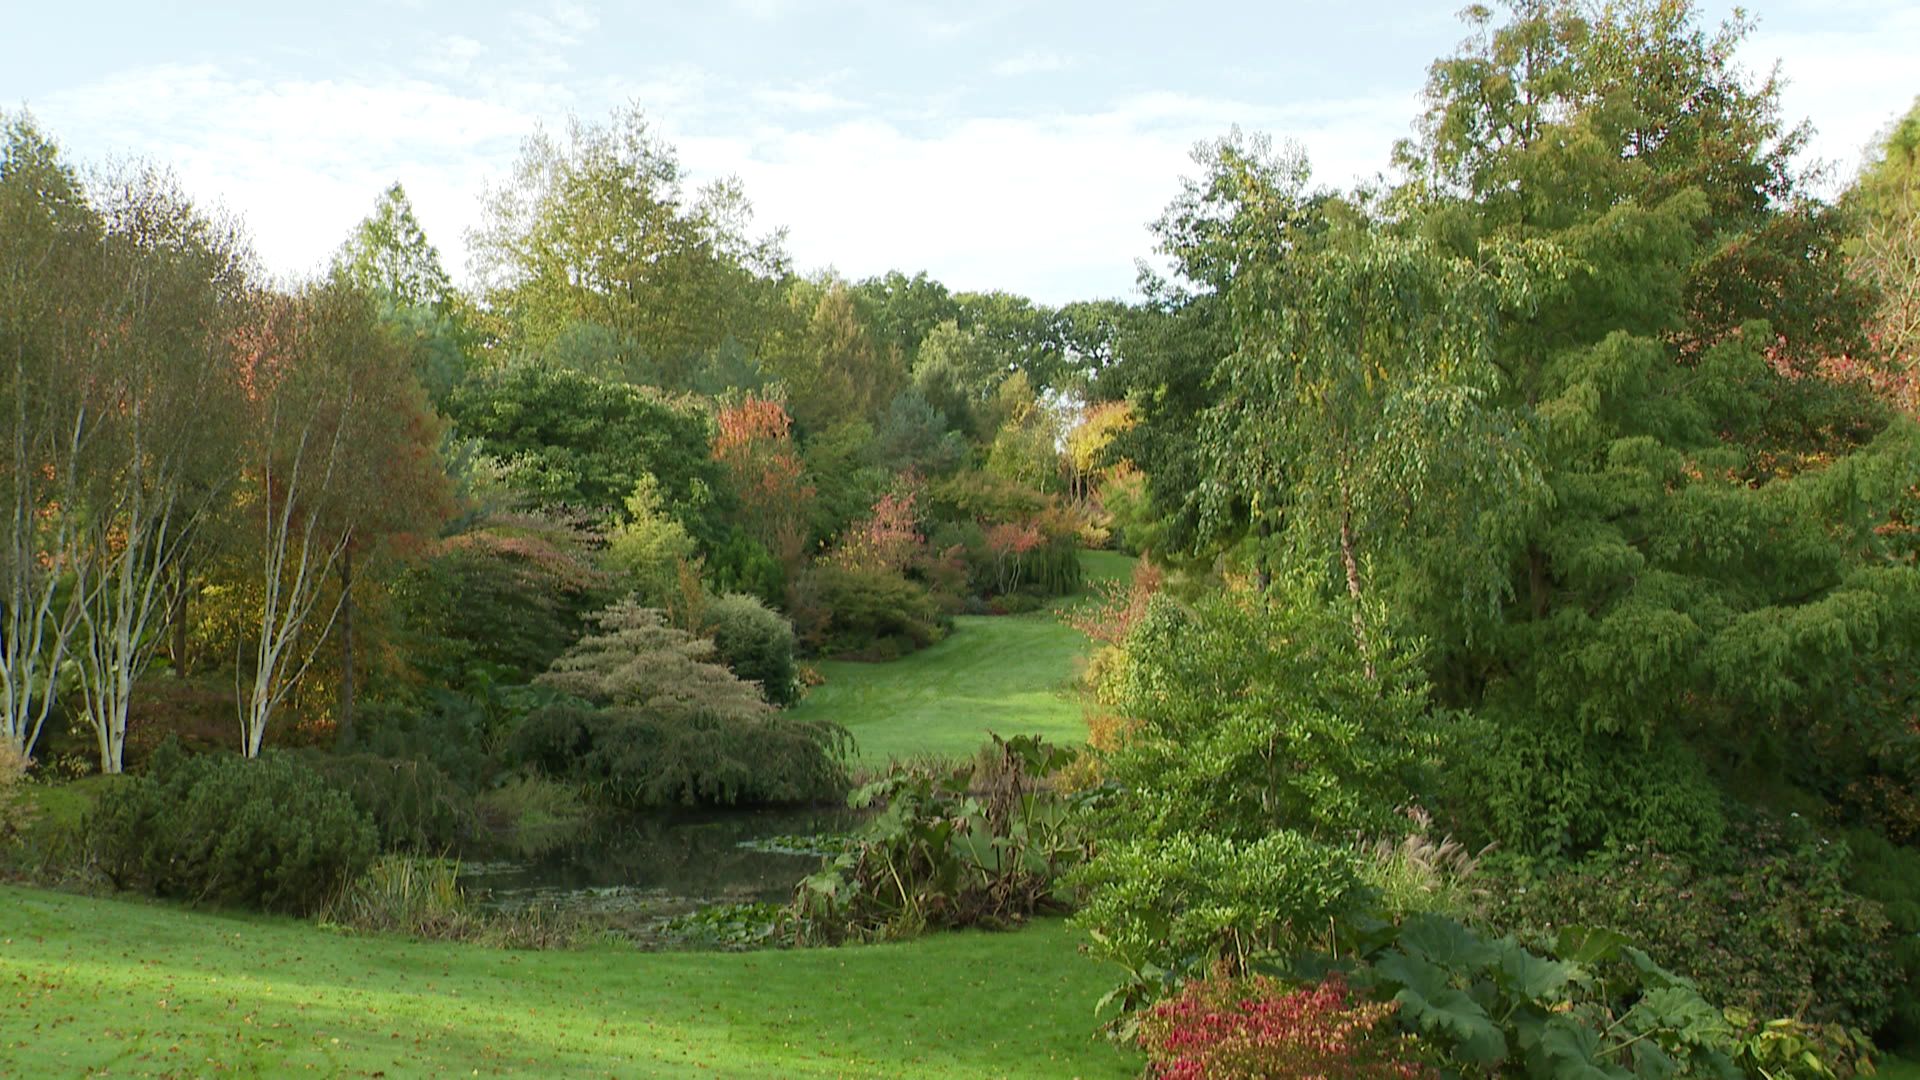 Les pentes du vallon de l'Etang de Launay offre une vue sur les 3 étangs creusés dans la partie basse de la propriété.